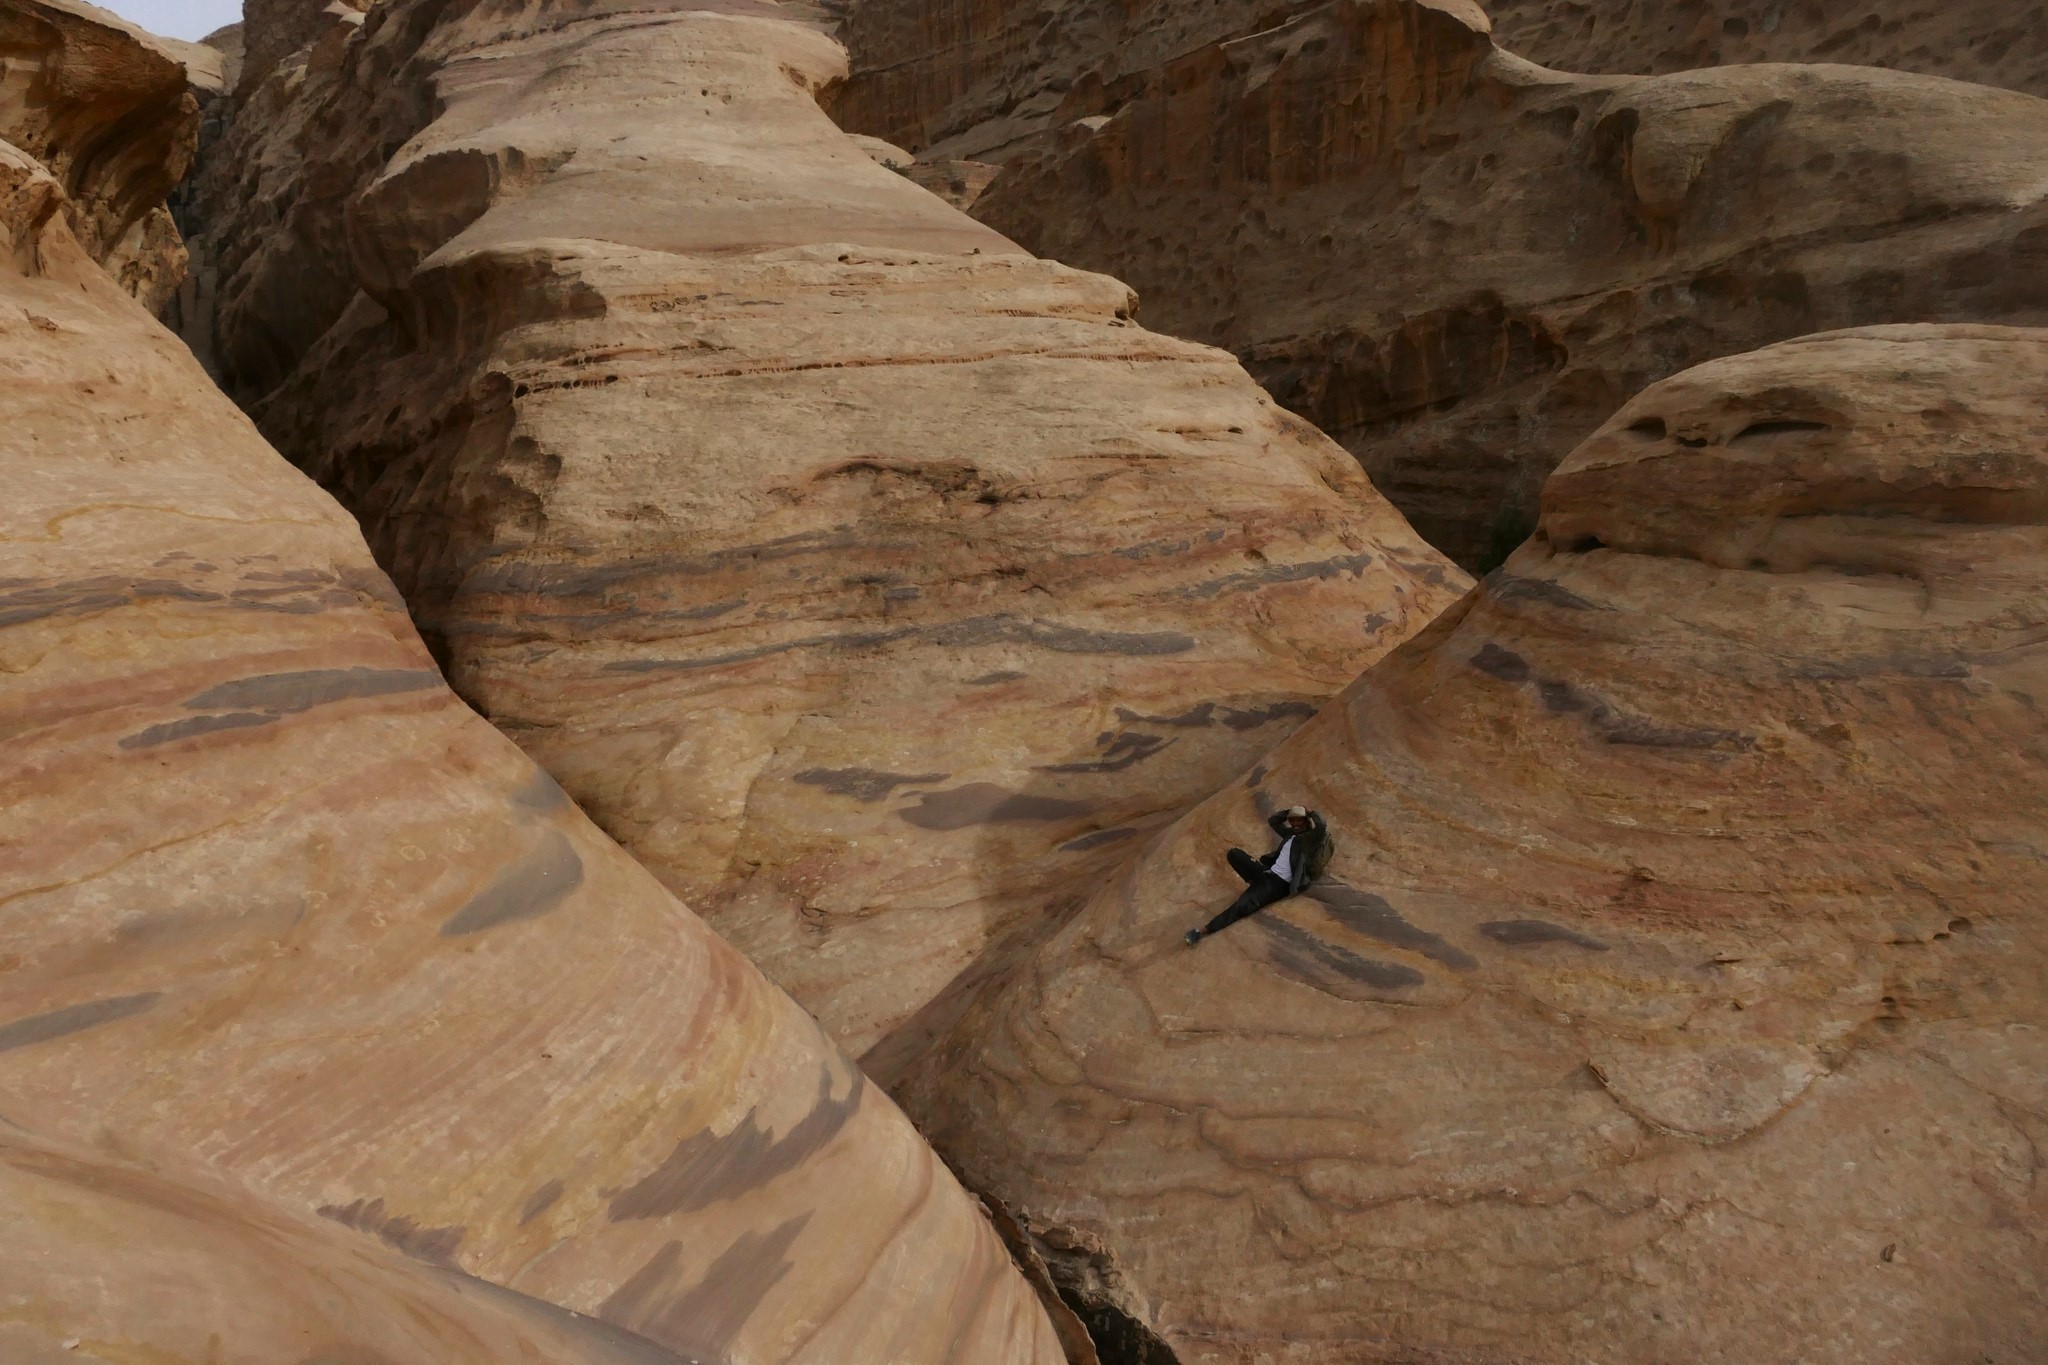 Wadi Rum Trail